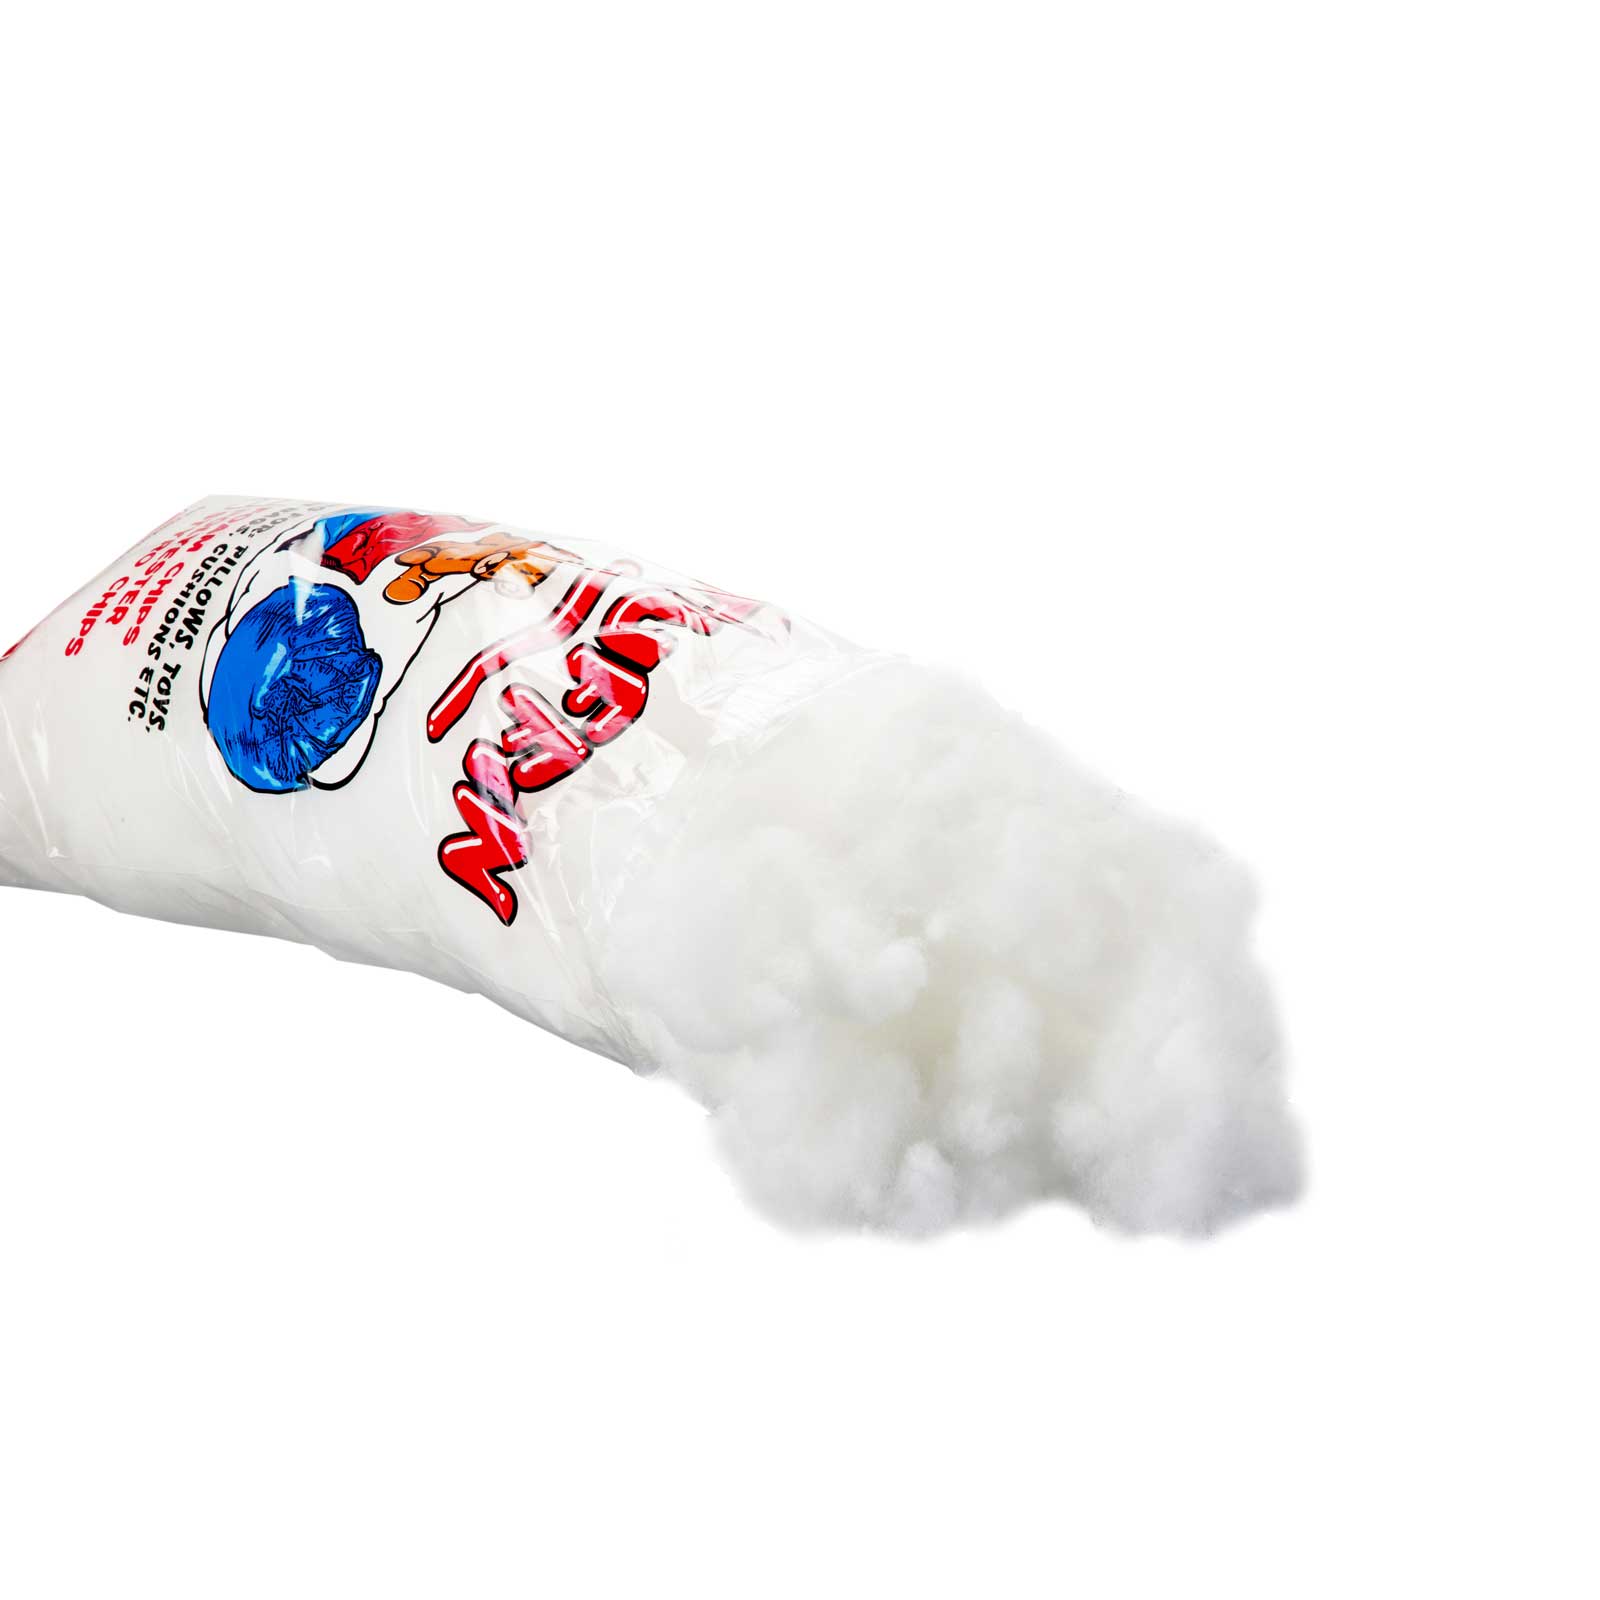 Cushions: Block foam versus chip foam - The Chesterfield Manufacturer